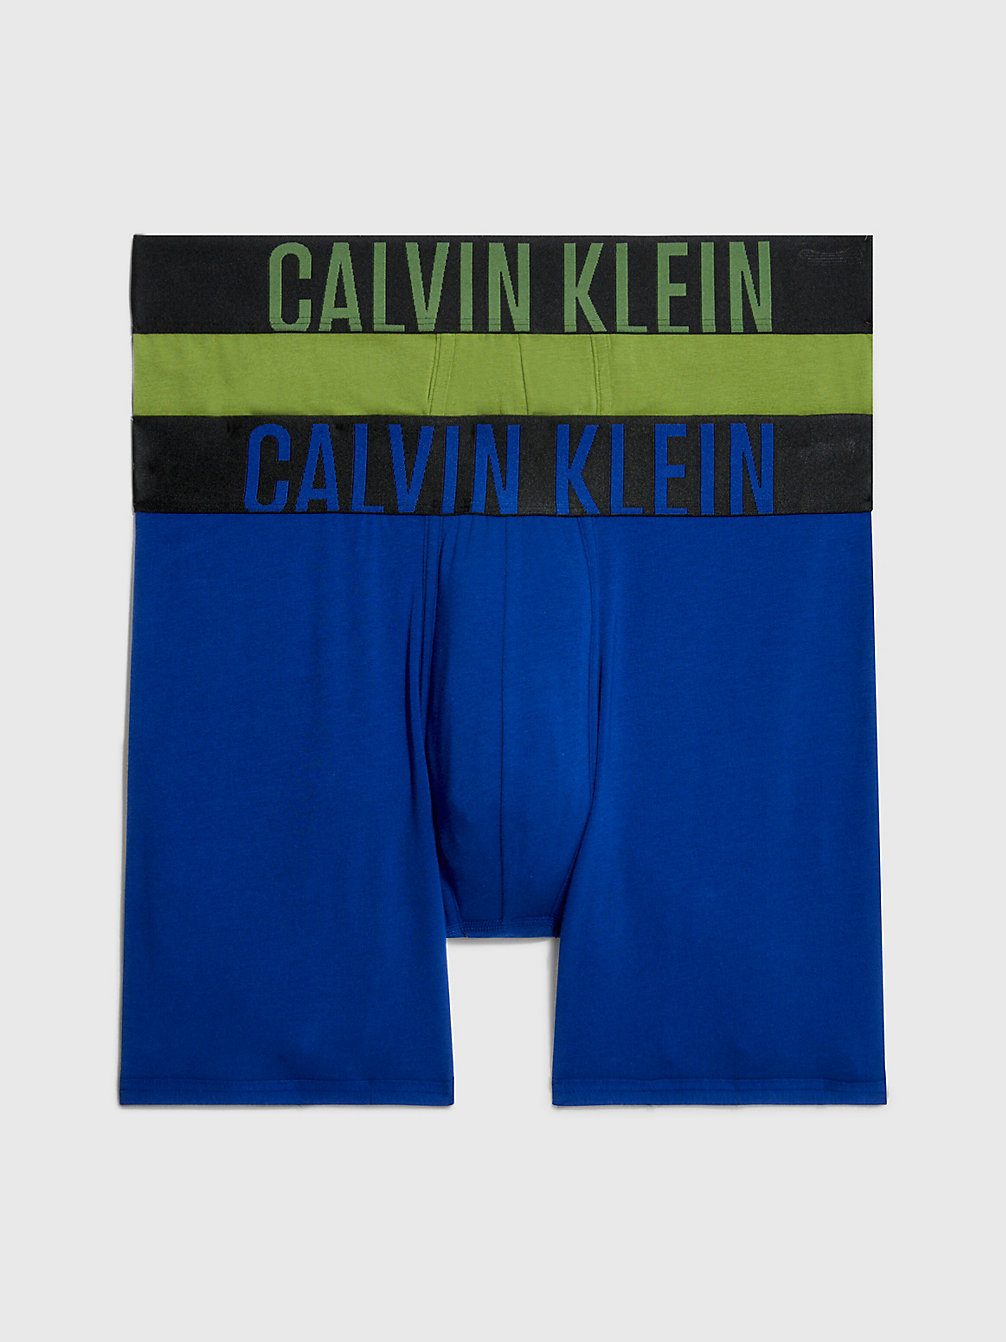 MIDNIGHT BLUE, UNIQUE JADE > Zestaw 2 Par Obcisłych Bokserek - Intense Power > undefined Mężczyźni - Calvin Klein